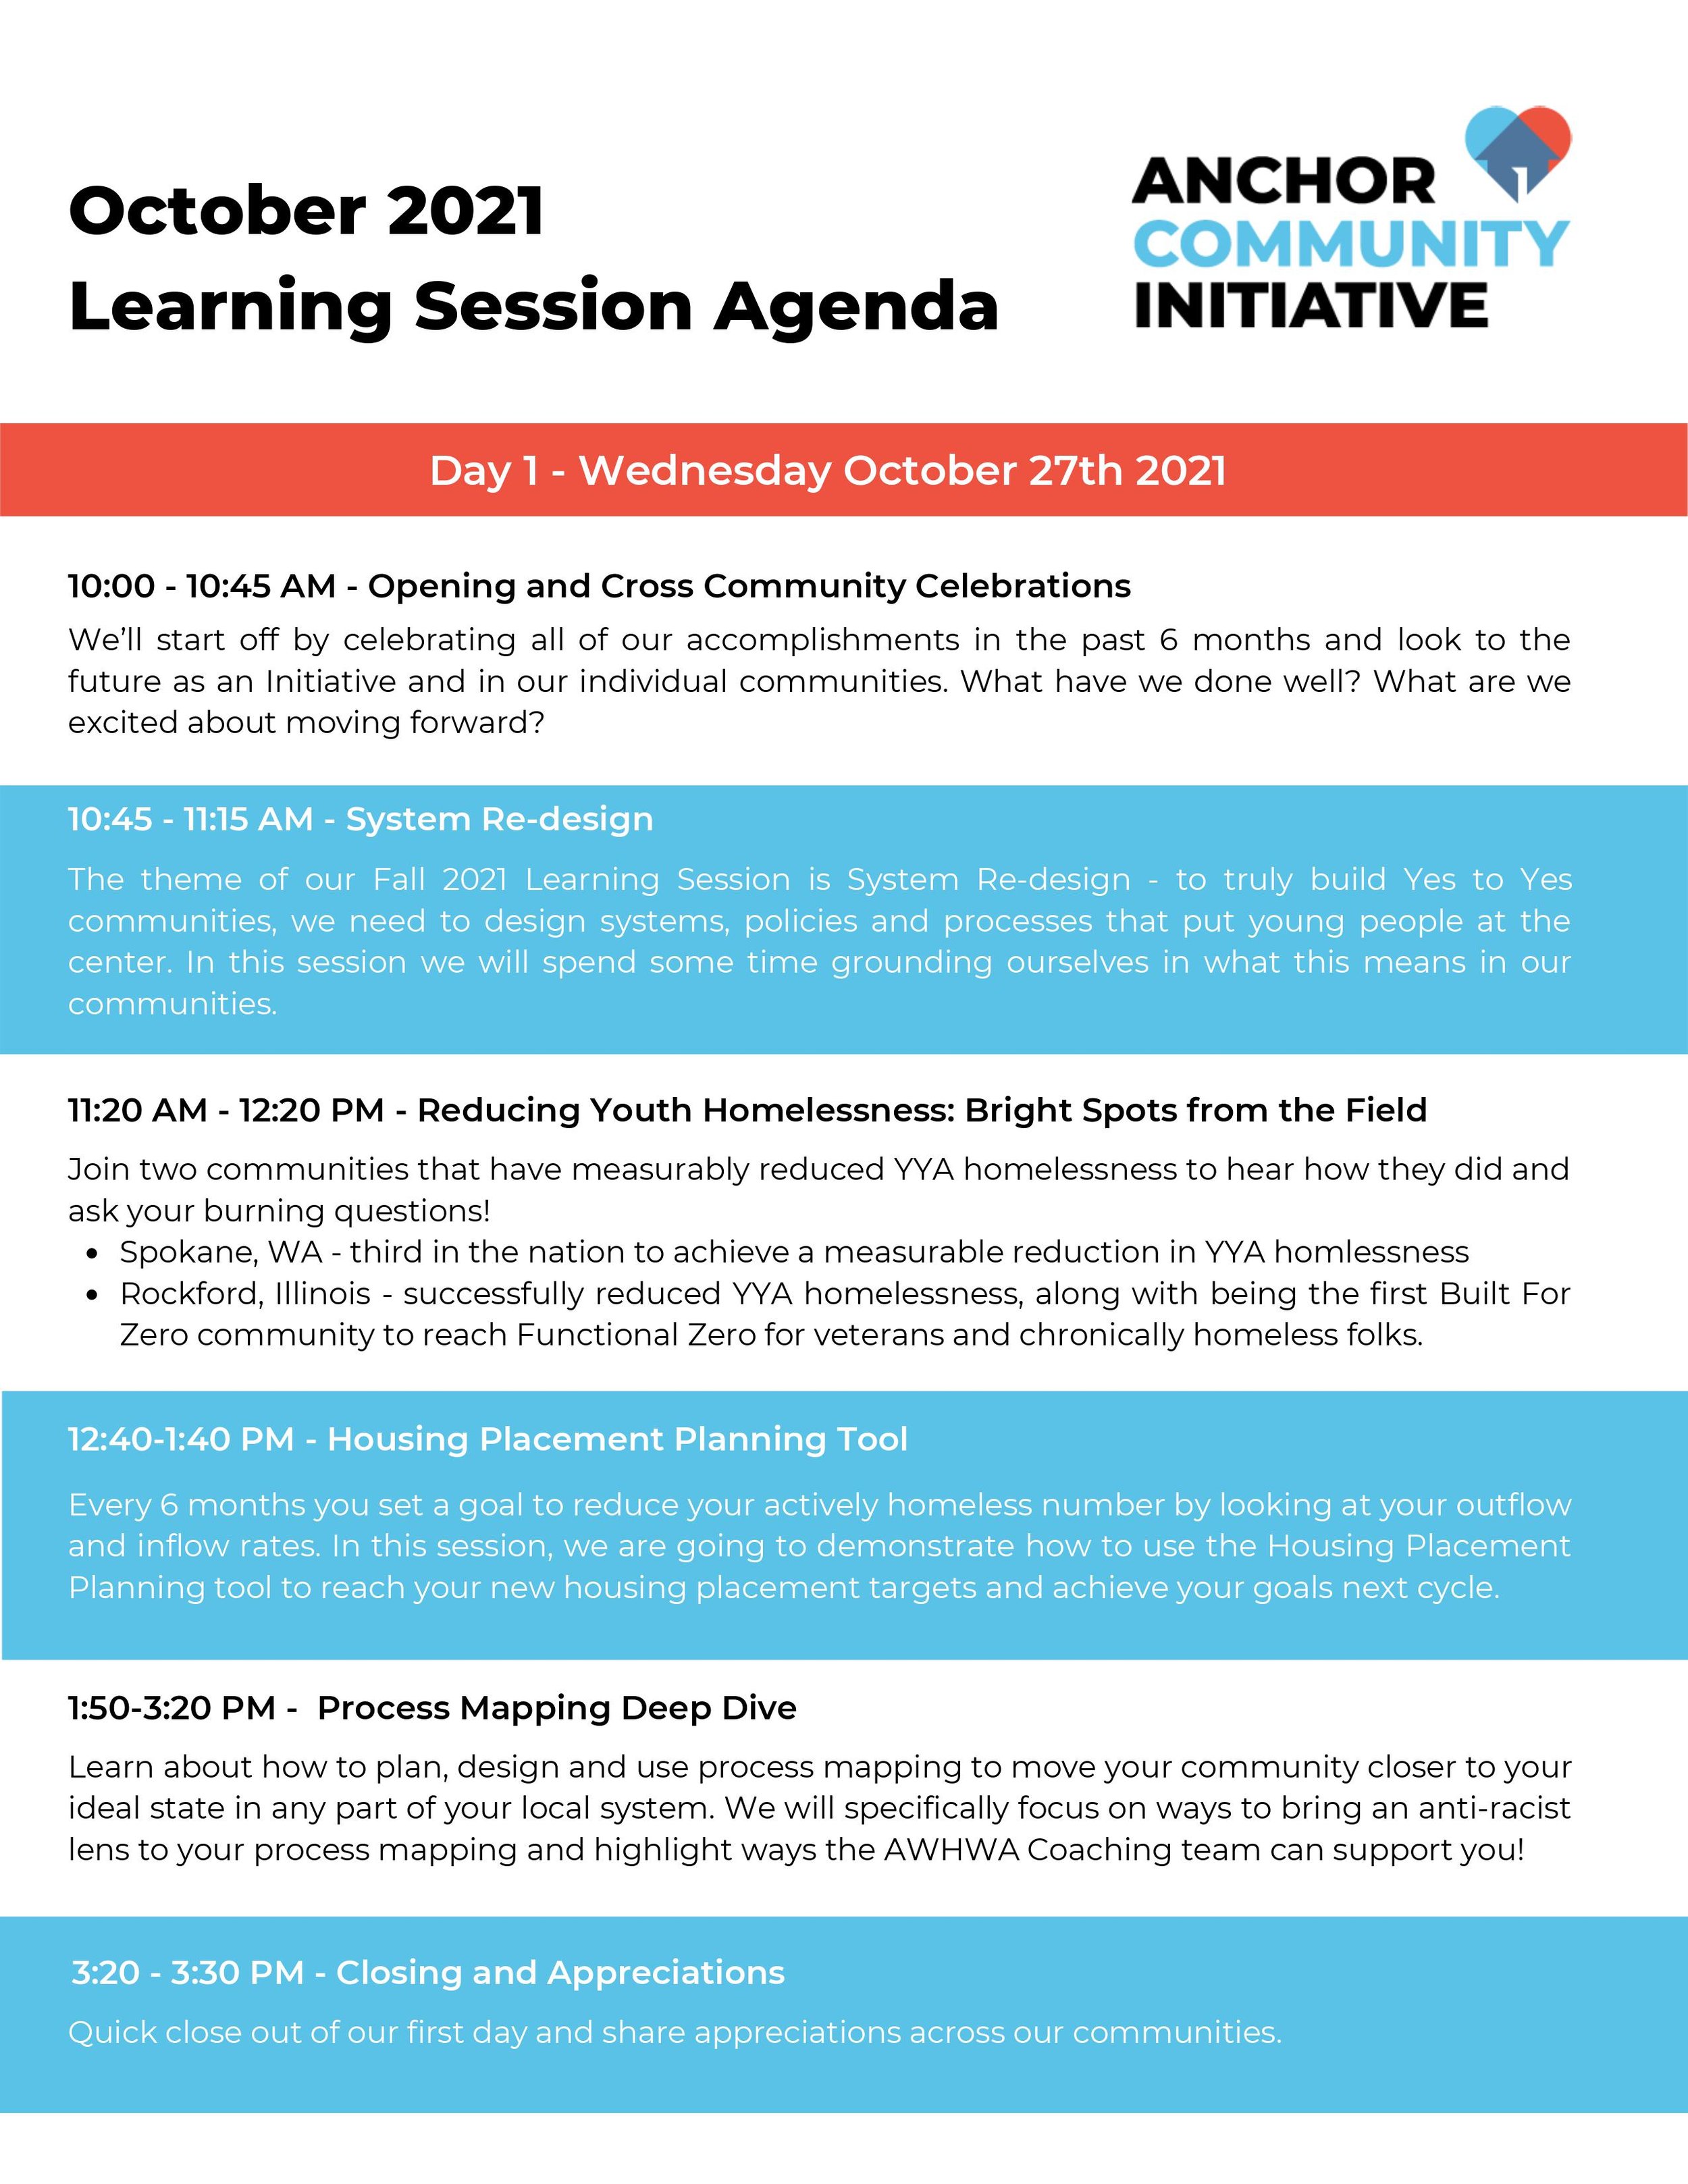 Learning Session Oct 2021 Agenda 1.jpg